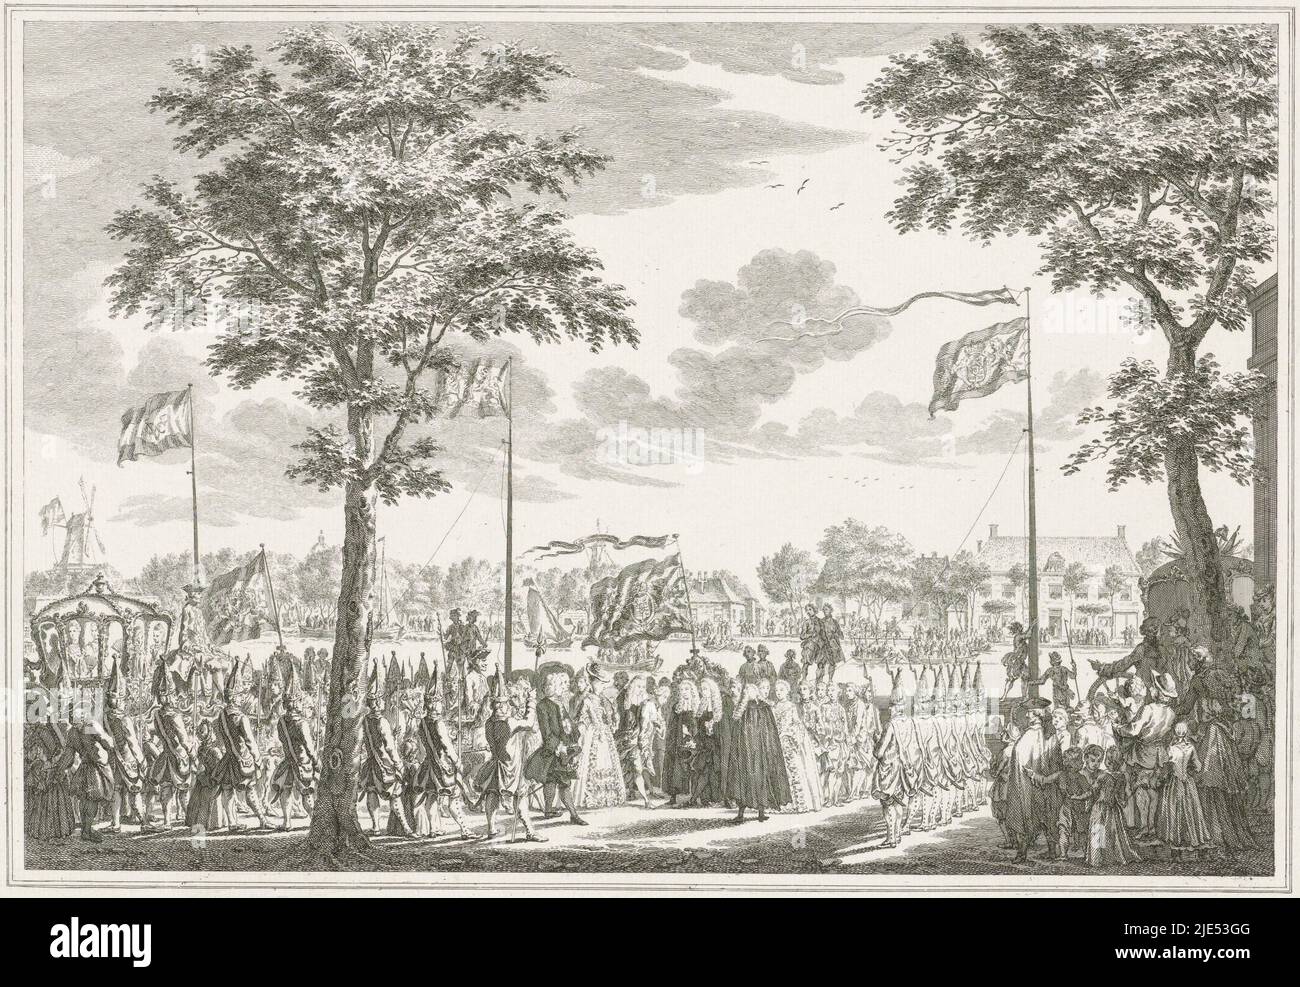 El director Willem V y la princesa Wilhelmina de Prusia dicen Adiós al magistrado de Ámsterdam en la posada de Berebijt aan de Buitenamstel, 4 de junio de 1768. Parte de una serie impresa con un título impreso y 14 placas de la inauguración del príncipe y la princesa en Ámsterdam, 30 de mayo - 4 de junio de 1768, despedida de Willem V y su esposa en el Buitenamstel, 1768 Imagen de las Bienaventuradas Vírgenes y ceremonias que ocurrieron a la llegada y durante el (...) Willem (...) y zyne Gemaalinne (...) en Ámsterdam, el lunes 30th de mayo, y unos días más tarde, en el año 1768 (serie de títulos)., imprimir Foto de stock